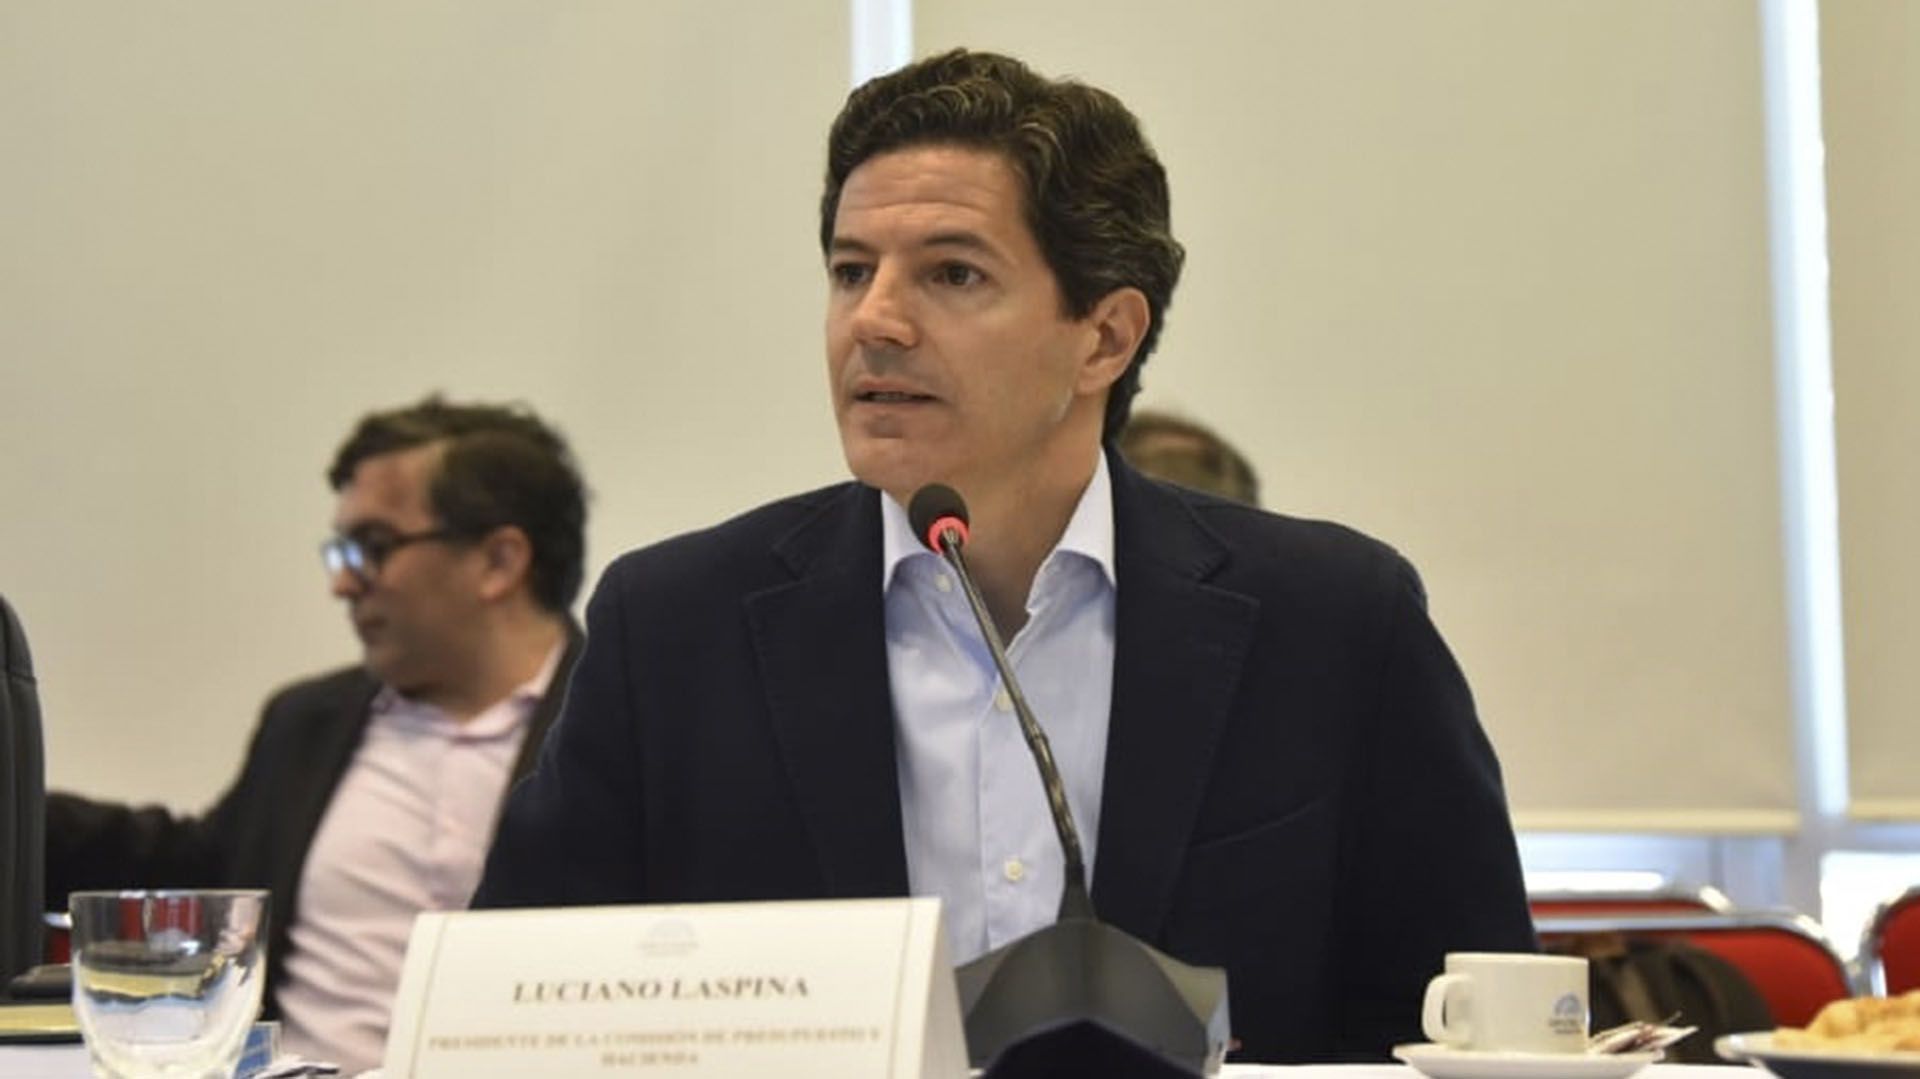 El diputado de JxC Luciano Laspina objetó el artículo 11 de la norma